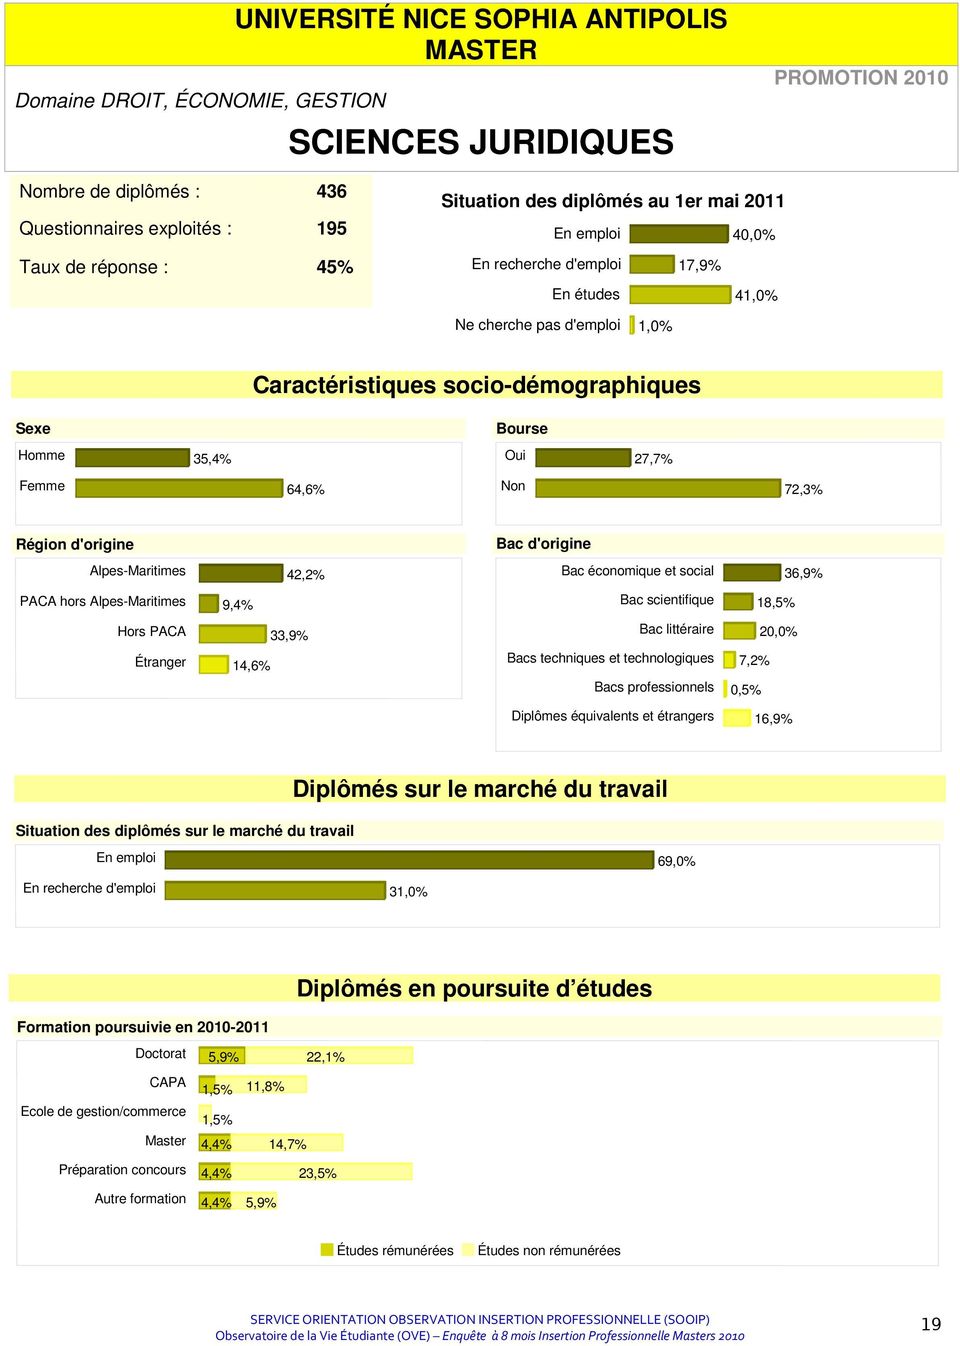 Région d'origine Bac d'origine Alpes-Maritimes 42,2% Bac économique et social 36,9% PACA hors Alpes-Maritimes 9,4% Bac scientifique 18,5% Hors PACA 33,9% Bac littéraire 20,0% Étranger 14,6% Bacs